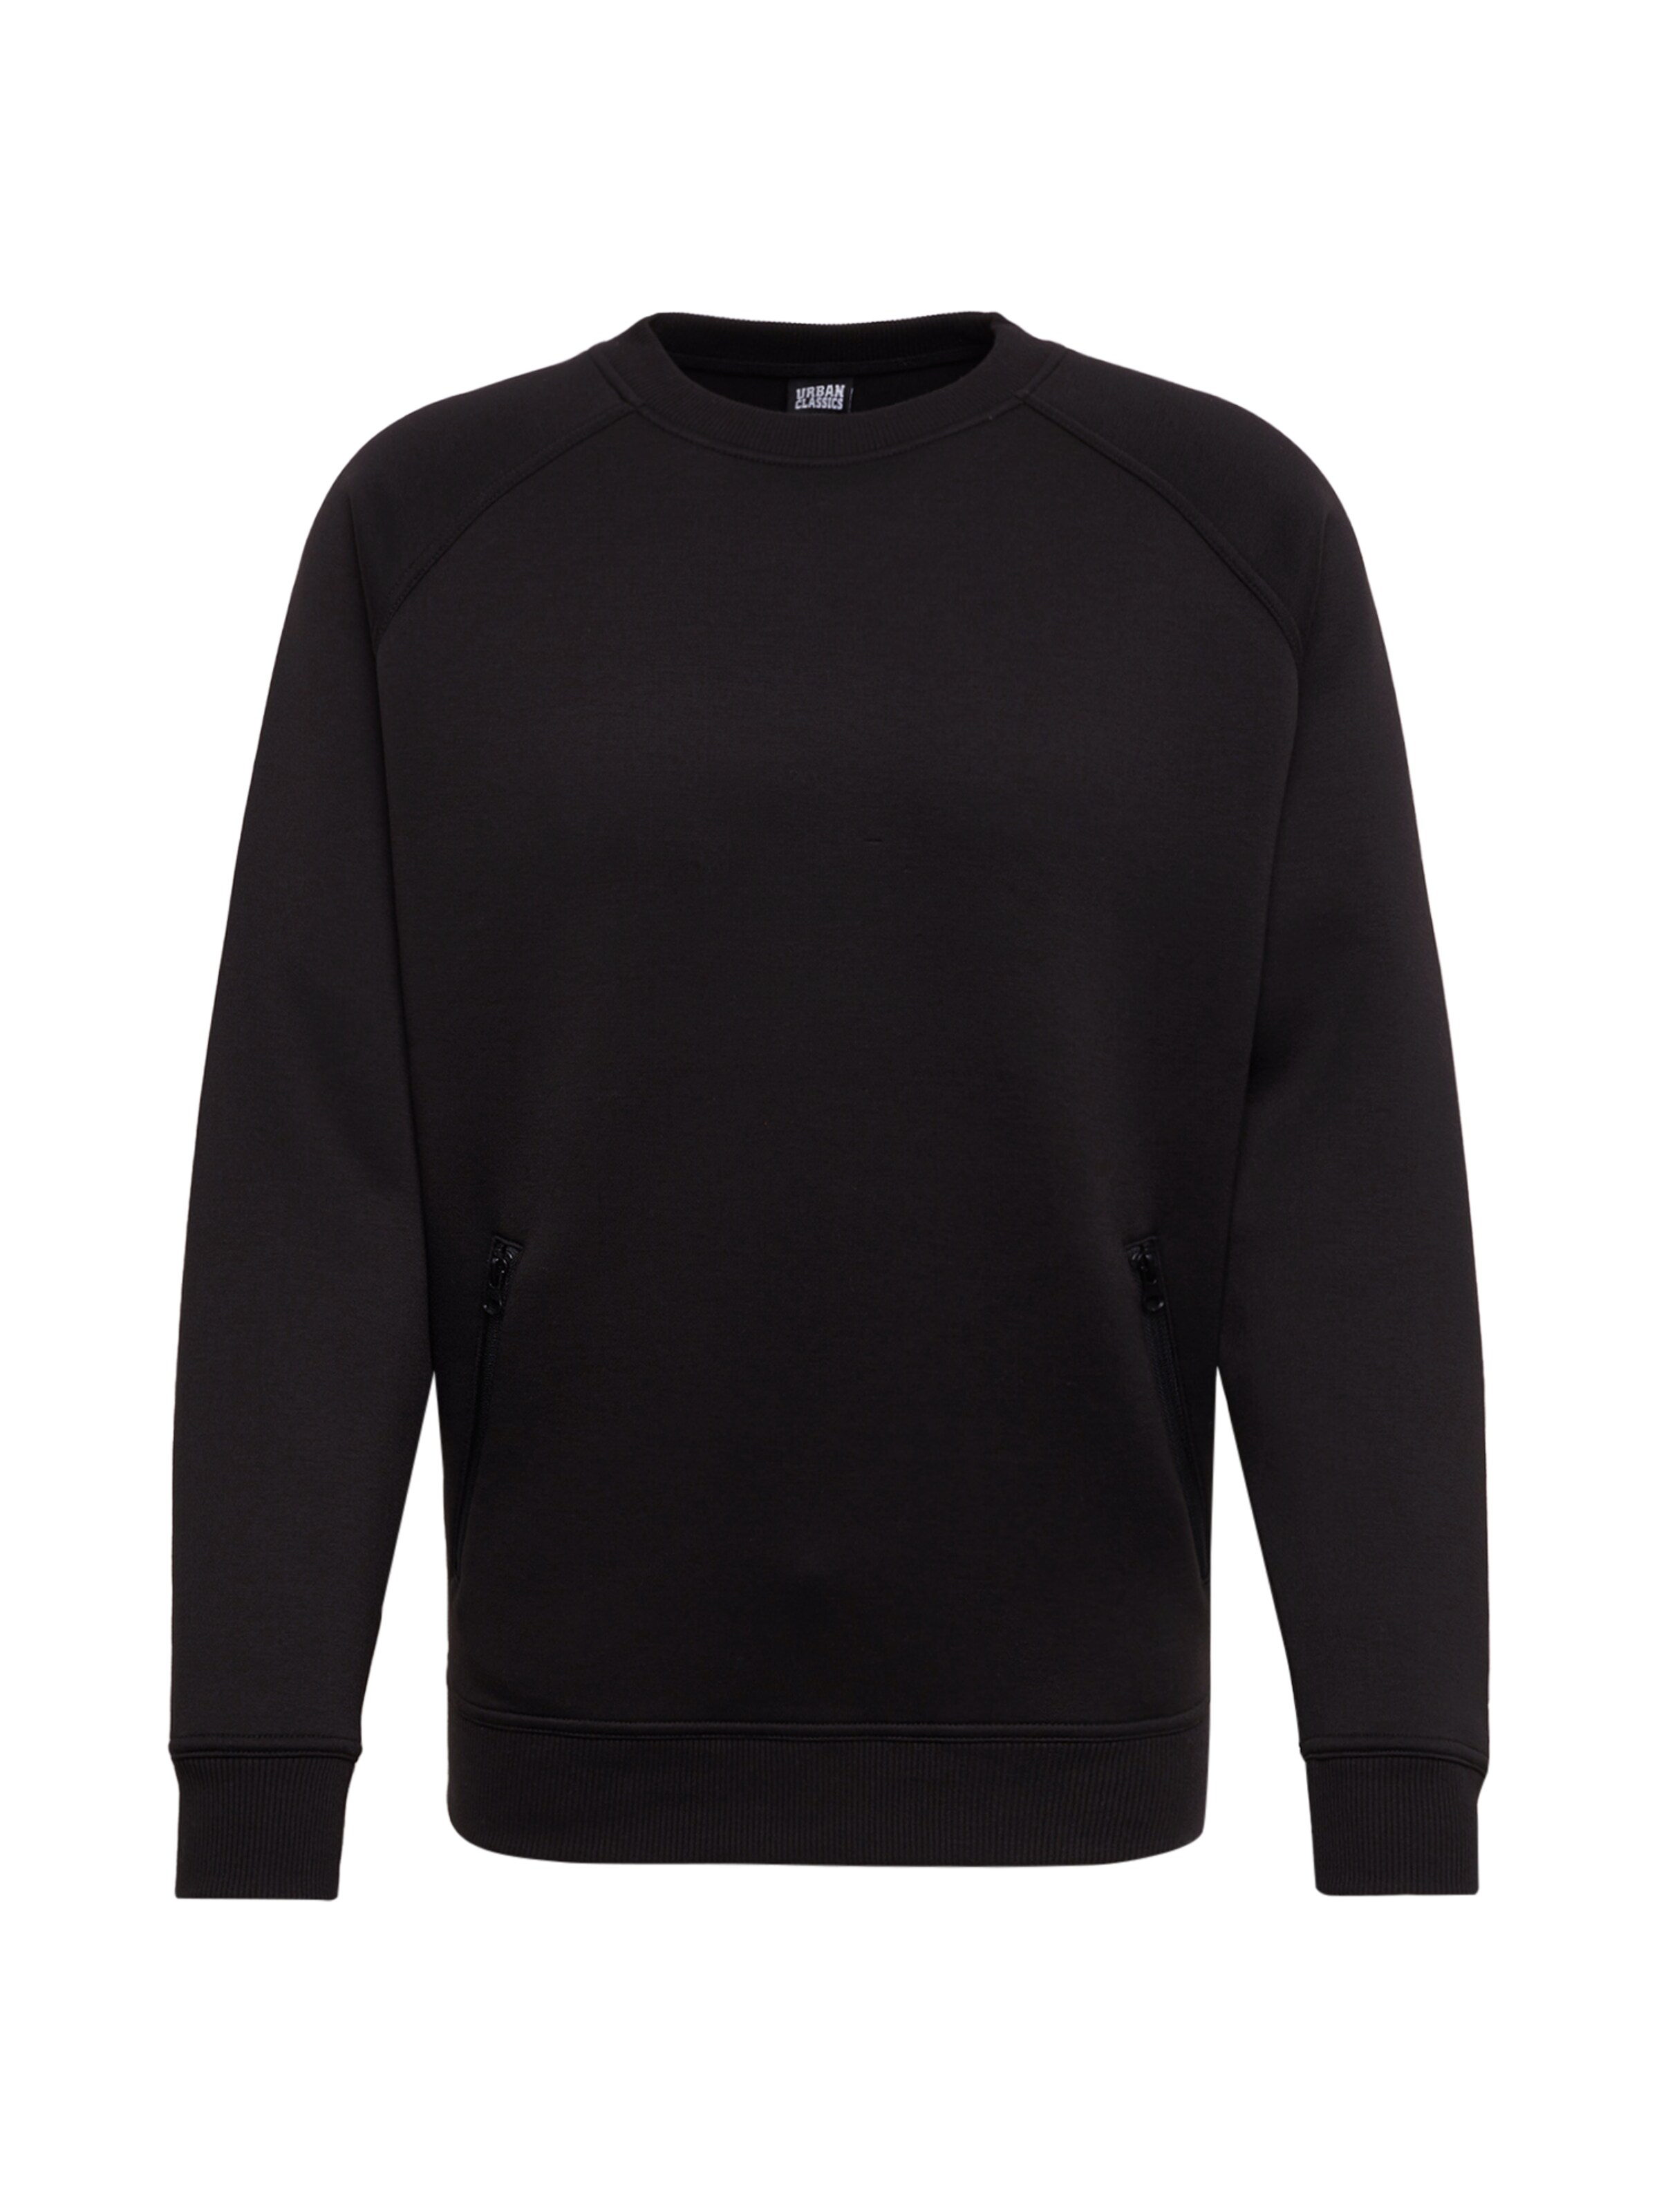 Men Plus sizes | Urban Classics Sweatshirt in Black - RW90340